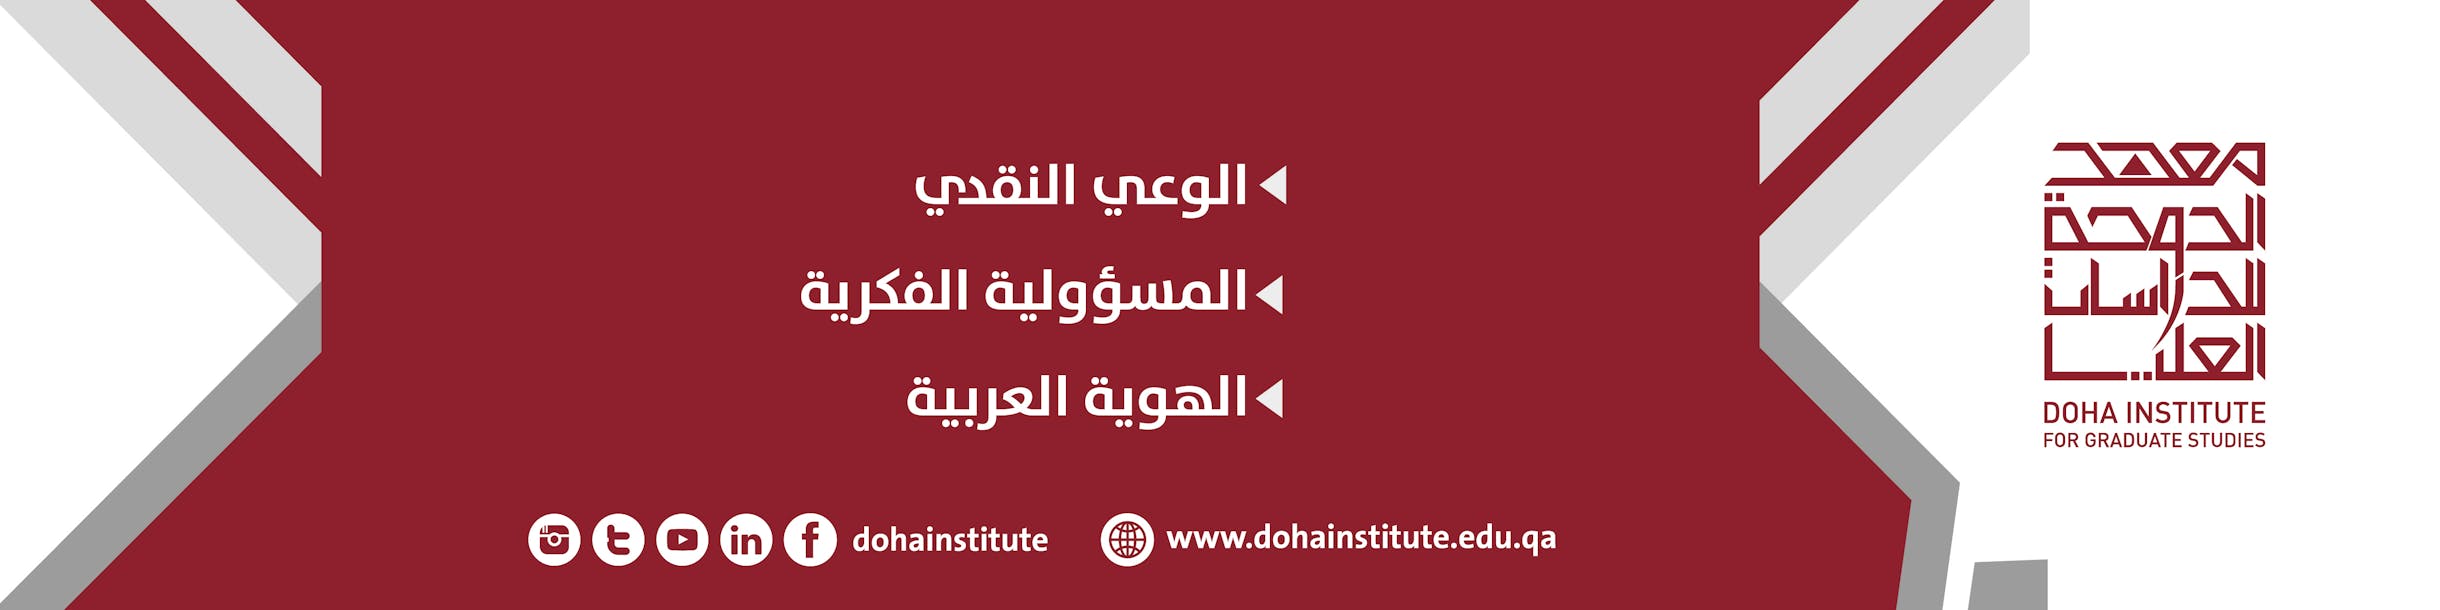 Doha Institute for Graduate Studies